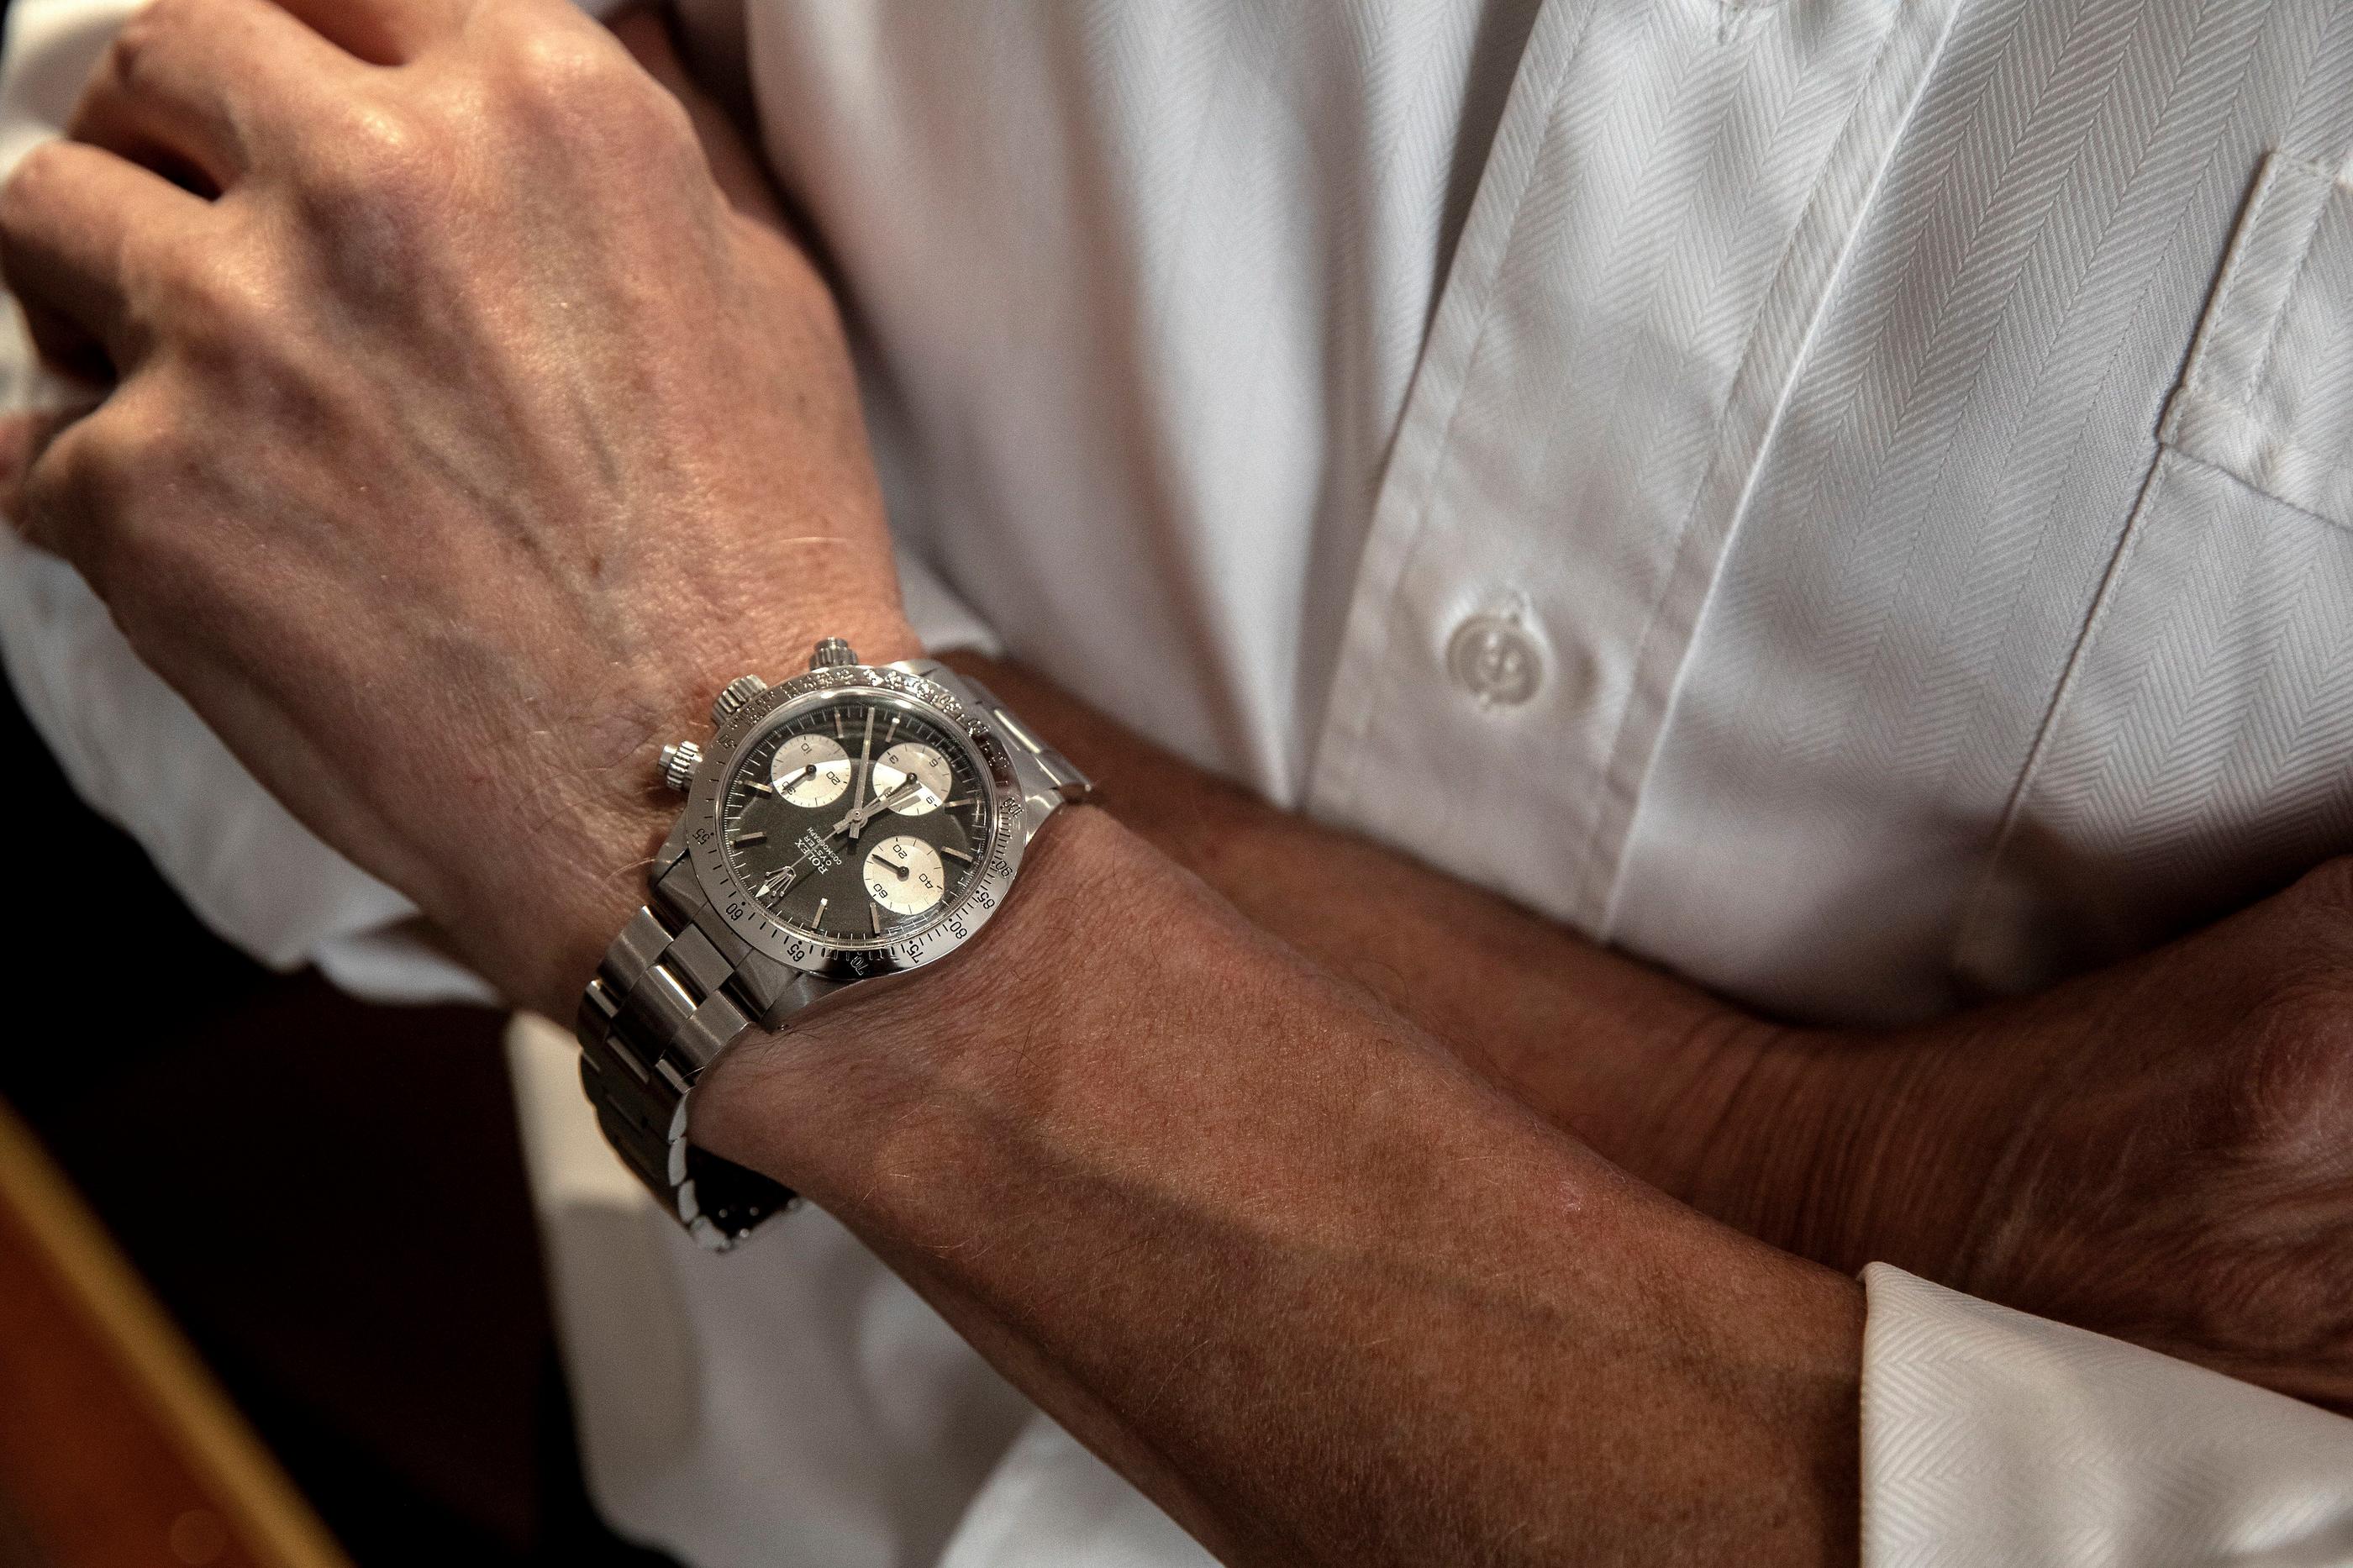 Les voleurs jetaient souvent leur dévolu sur des montres Rolex, mais ils ciblaient aussi d’autres grandes marques, pour les revendre en Belgique. (Illustration) LP/Yann Foreix)